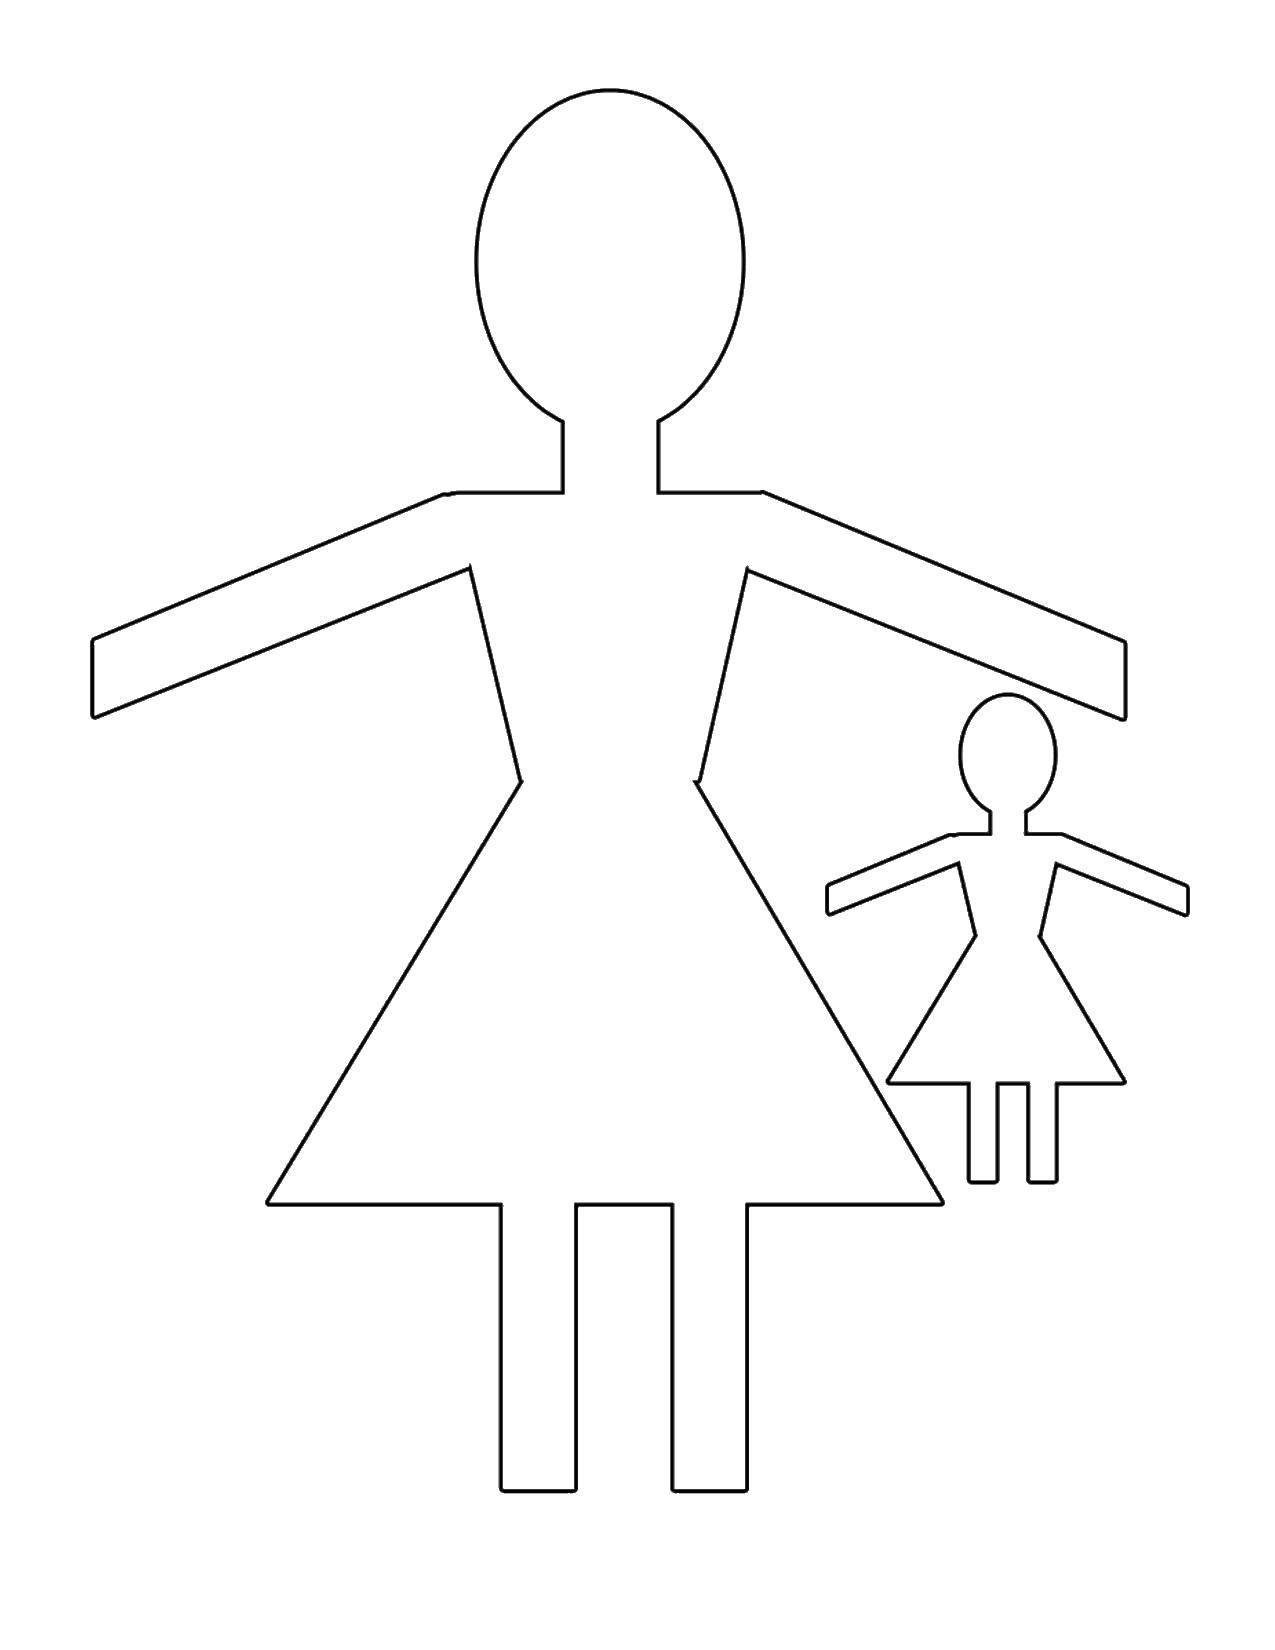 Название: Раскраска Контур девочки из бумаги. Категория: Контур куклы. Теги: контур, бумага, юбка.